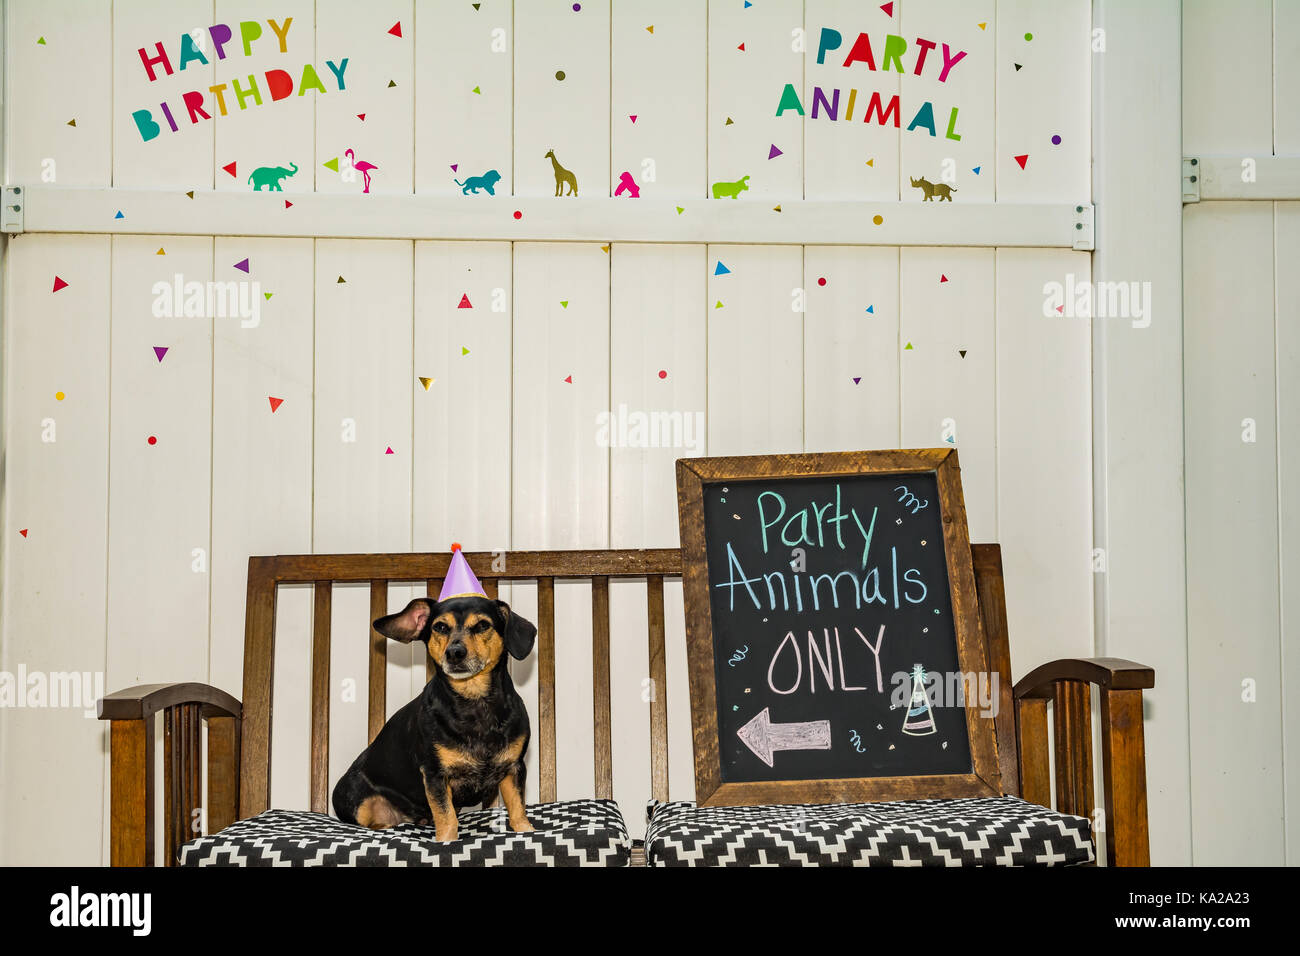 Einen niedlichen Dackel auf einer Party Animal theme Party. Stockfoto